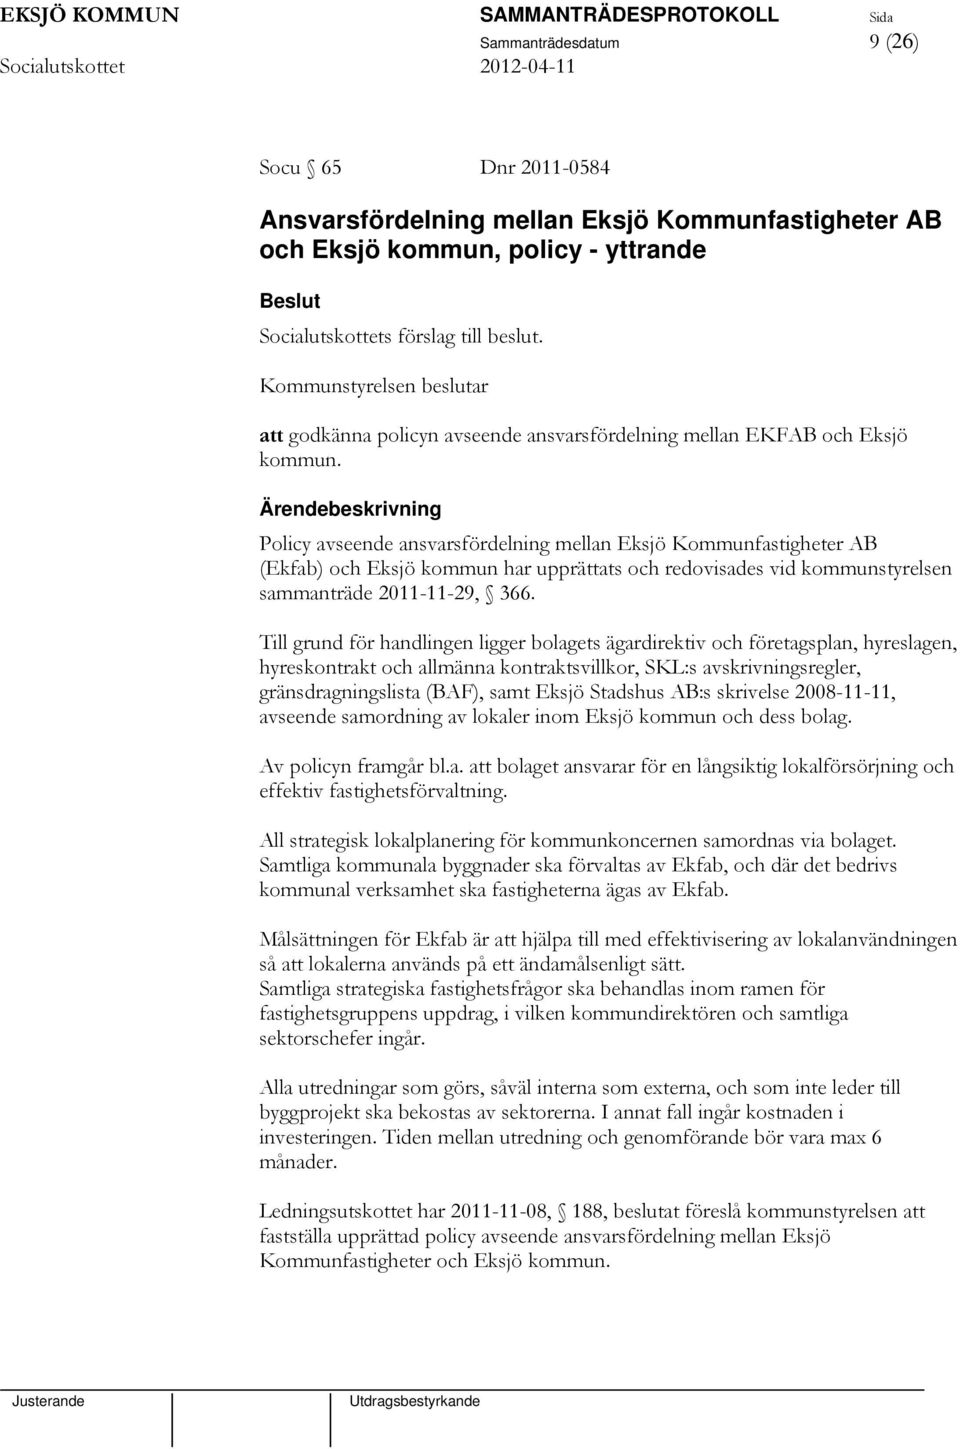 Policy avseende ansvarsfördelning mellan Eksjö Kommunfastigheter AB (Ekfab) och Eksjö kommun har upprättats och redovisades vid kommunstyrelsen sammanträde 2011-11-29, 366.